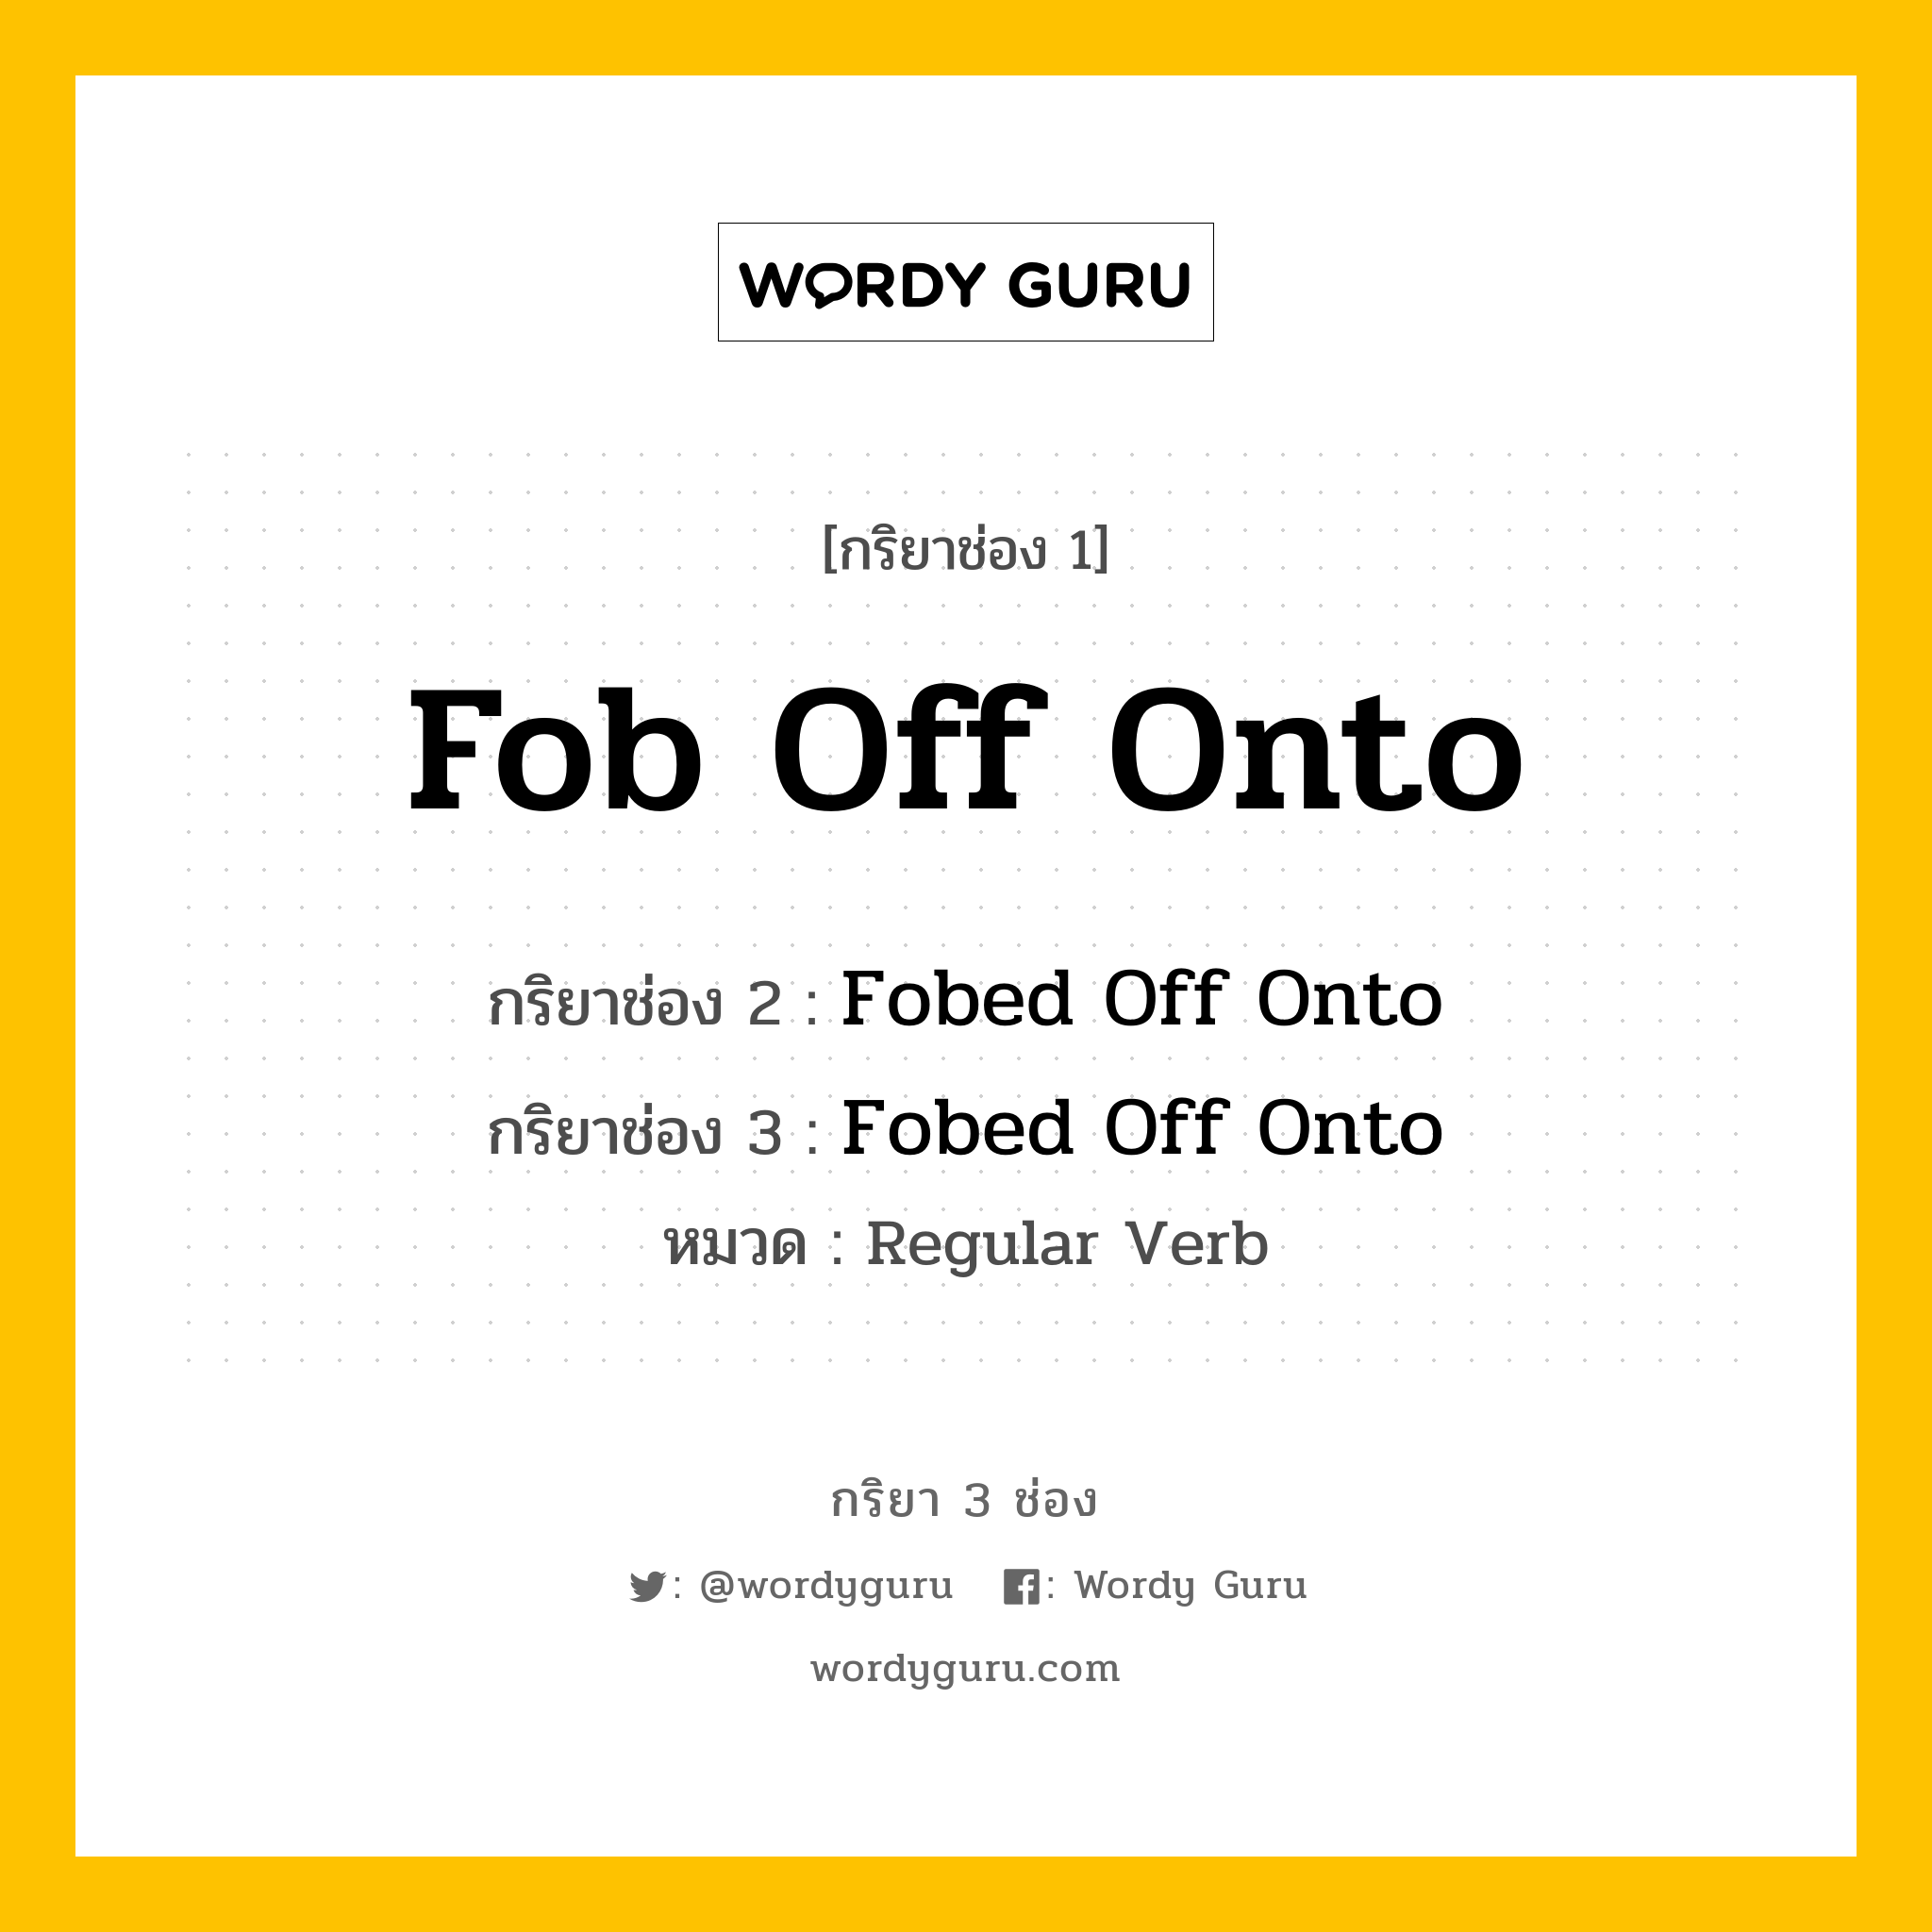 กริยา 3 ช่อง: Fob Off Onto ช่อง 2 Fob Off Onto ช่อง 3 คืออะไร, กริยาช่อง 1 Fob Off Onto กริยาช่อง 2 Fobed Off Onto กริยาช่อง 3 Fobed Off Onto หมวด Regular Verb หมวด Regular Verb